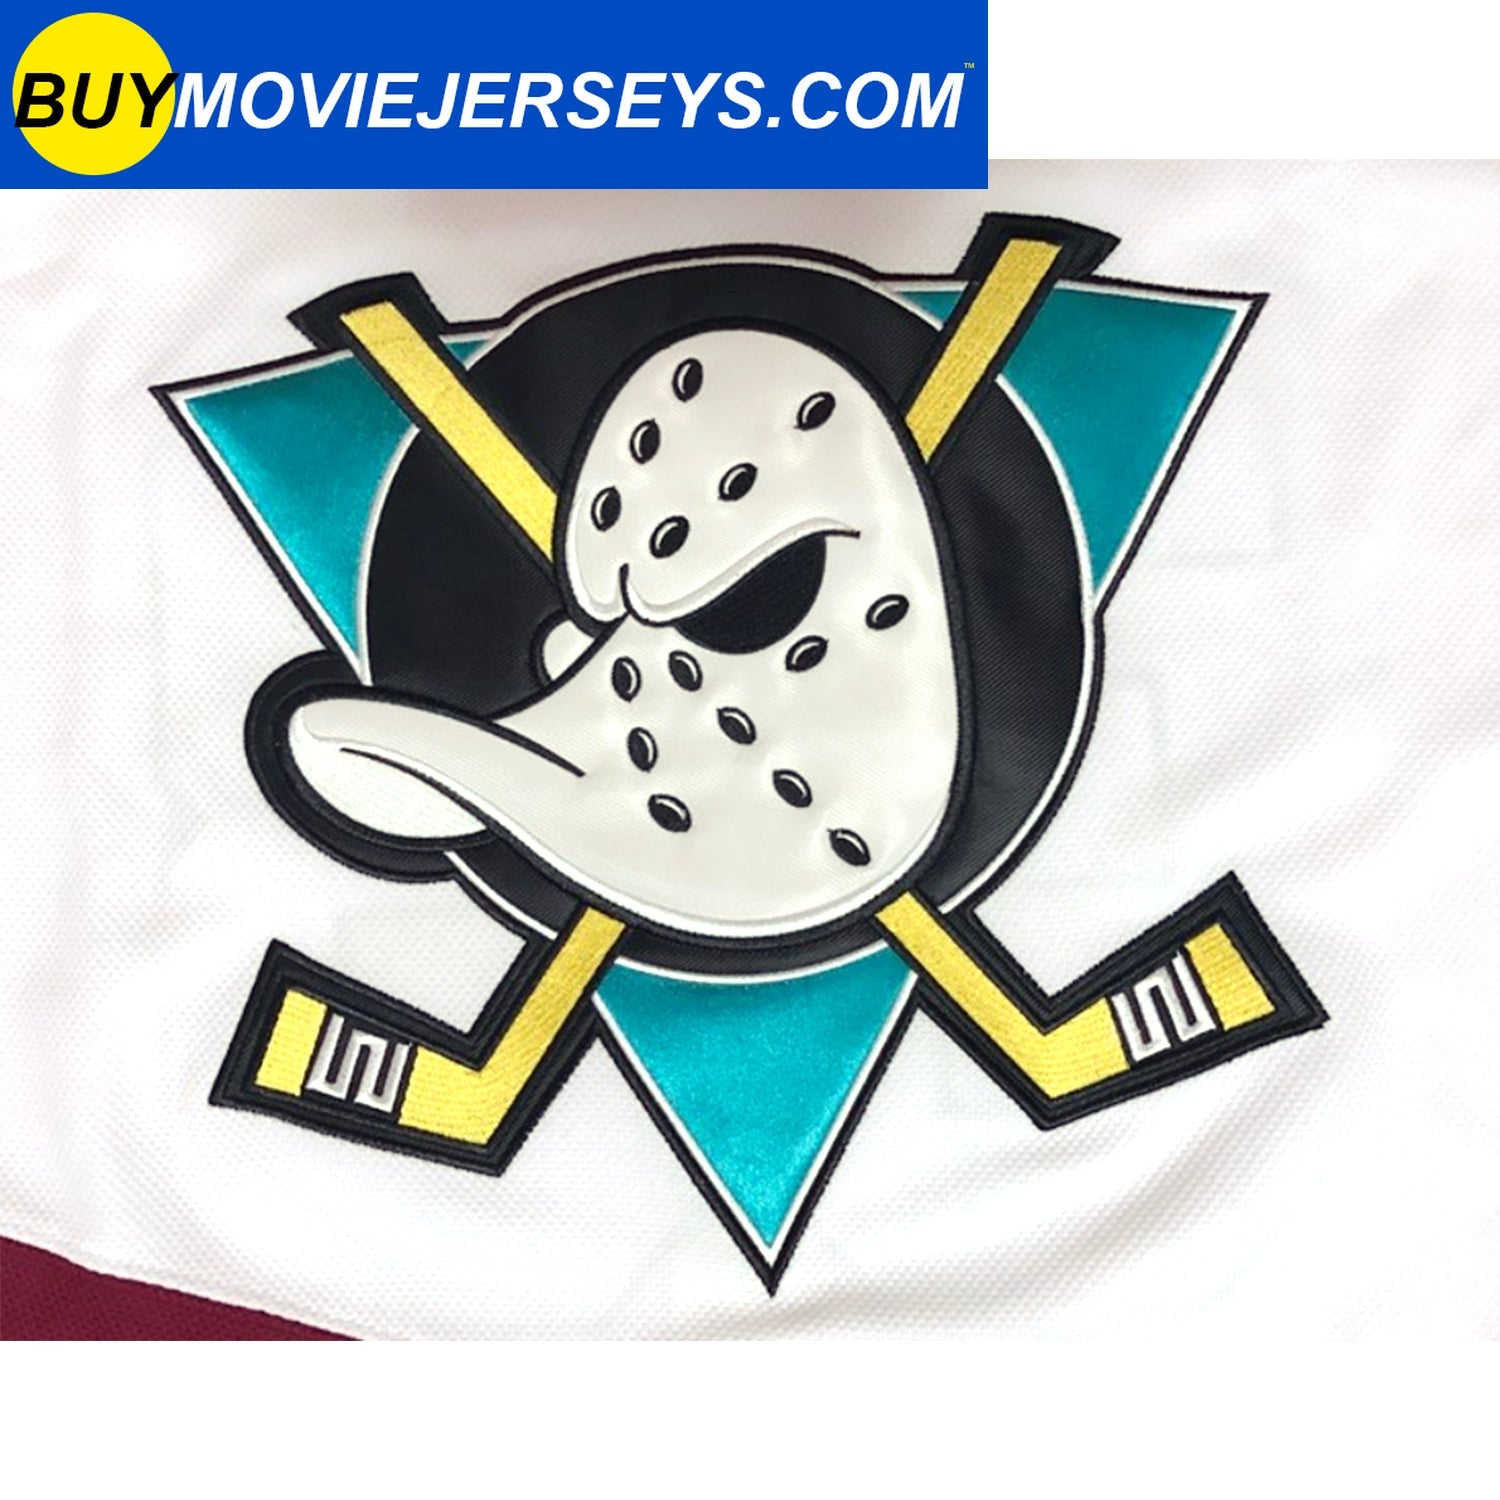 Gordon Bombay #66 Waves Hockey Jersey Mighty Ducks Movie Minnehaha Uniform  Gift 